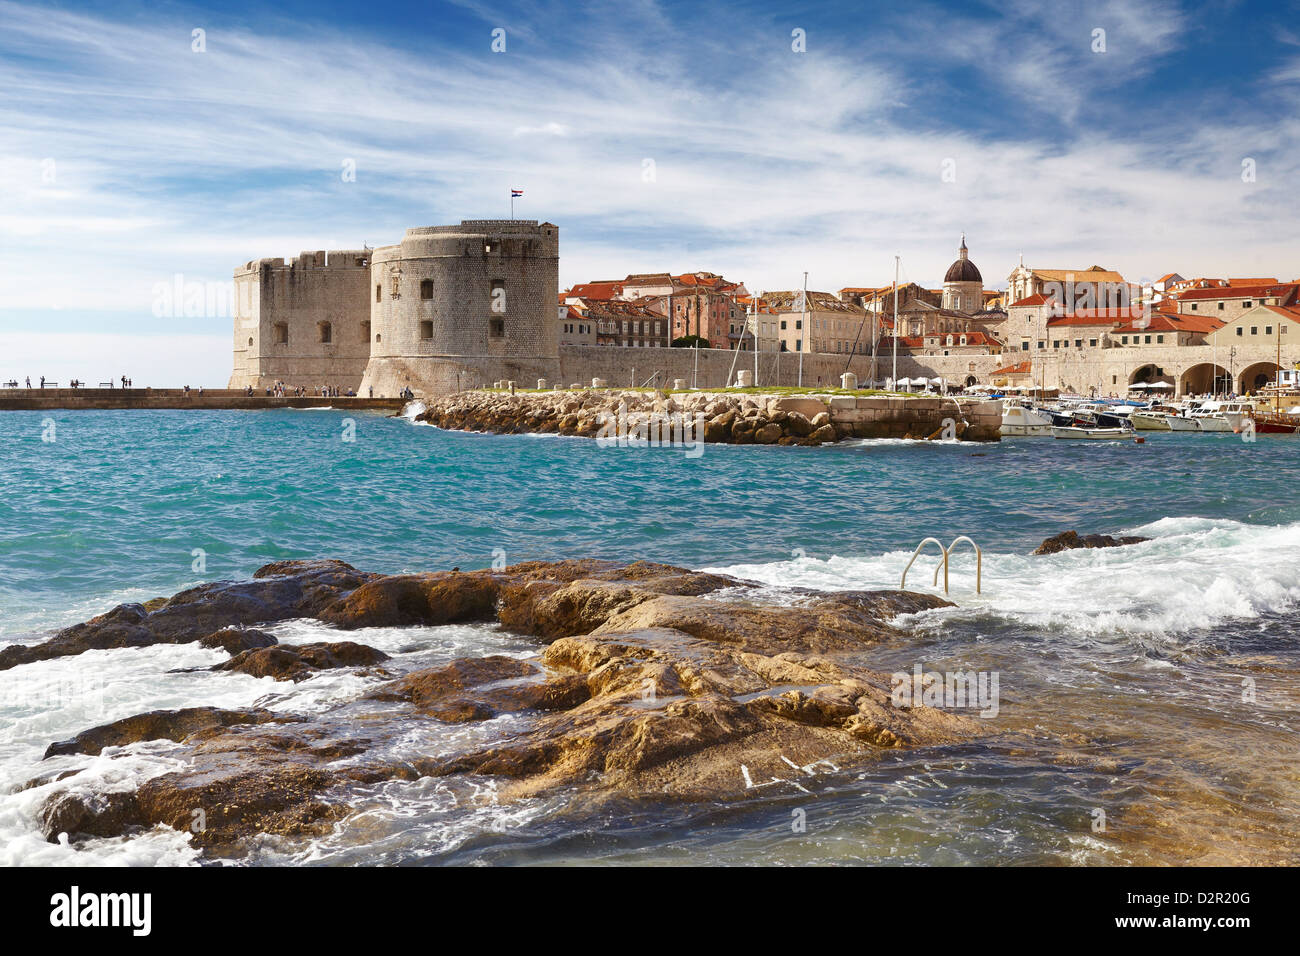 La vieille ville de Dubrovnik, ville de Harbour View, Croatie Banque D'Images